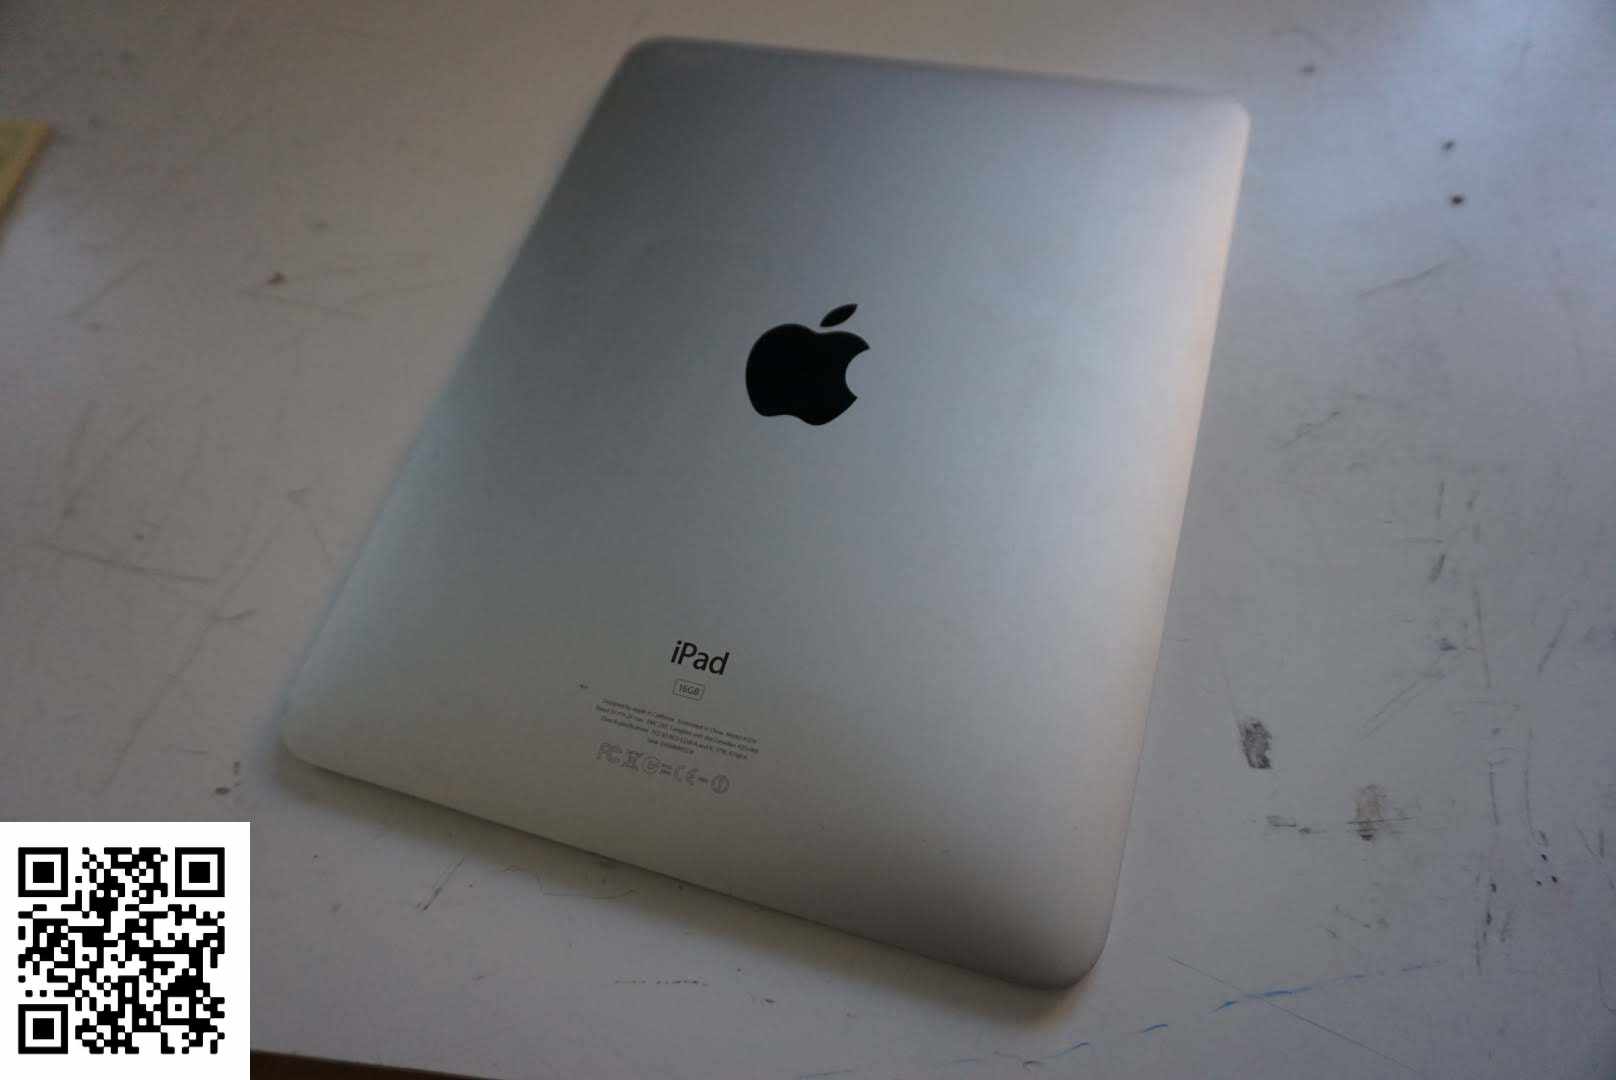 iPad qui bug?